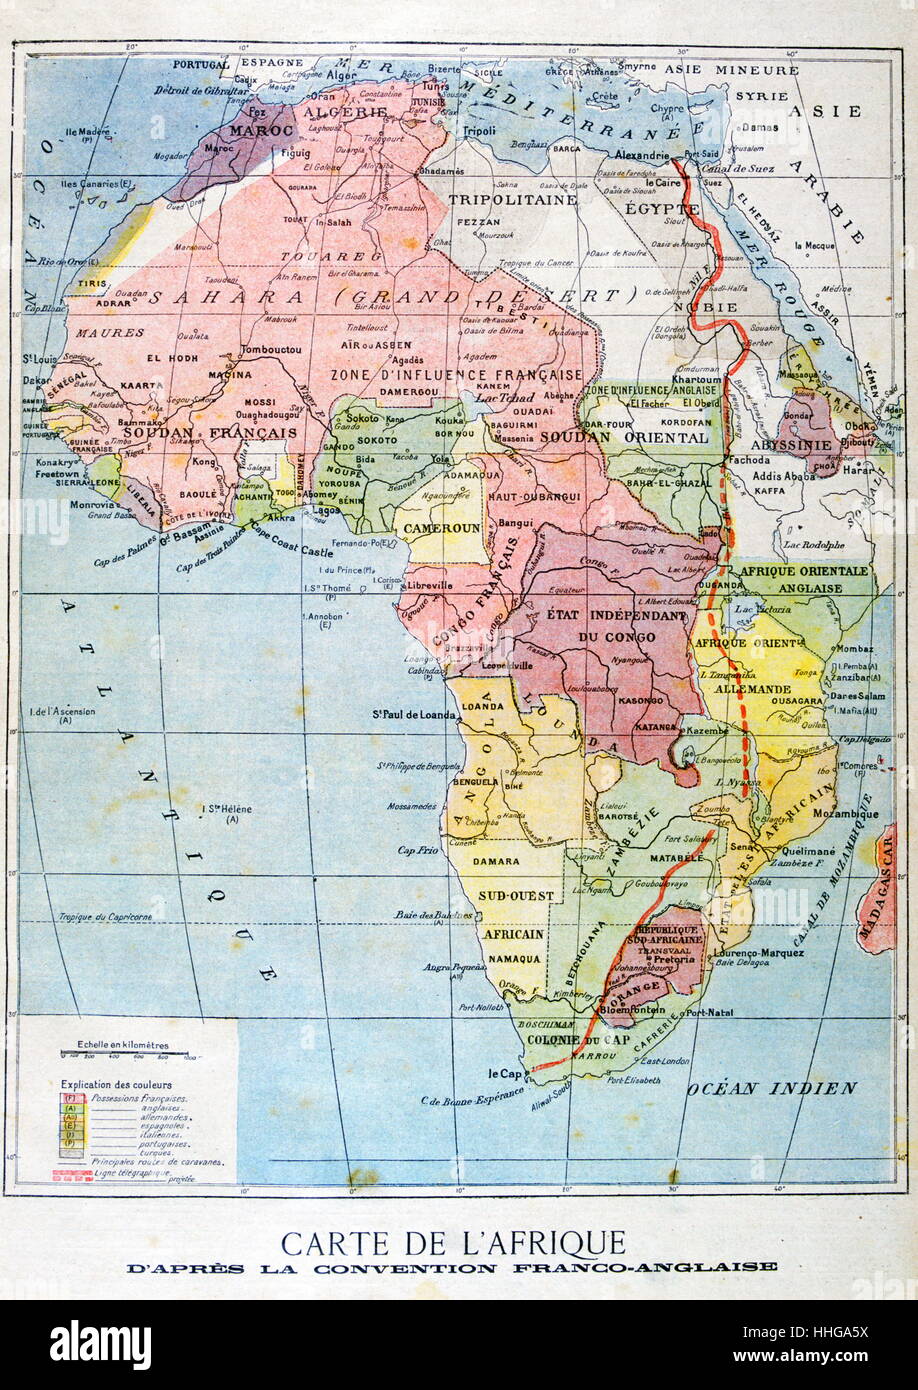 Mapa francés de los territorios controlados por los imperios coloniales en África 1899 Foto de stock